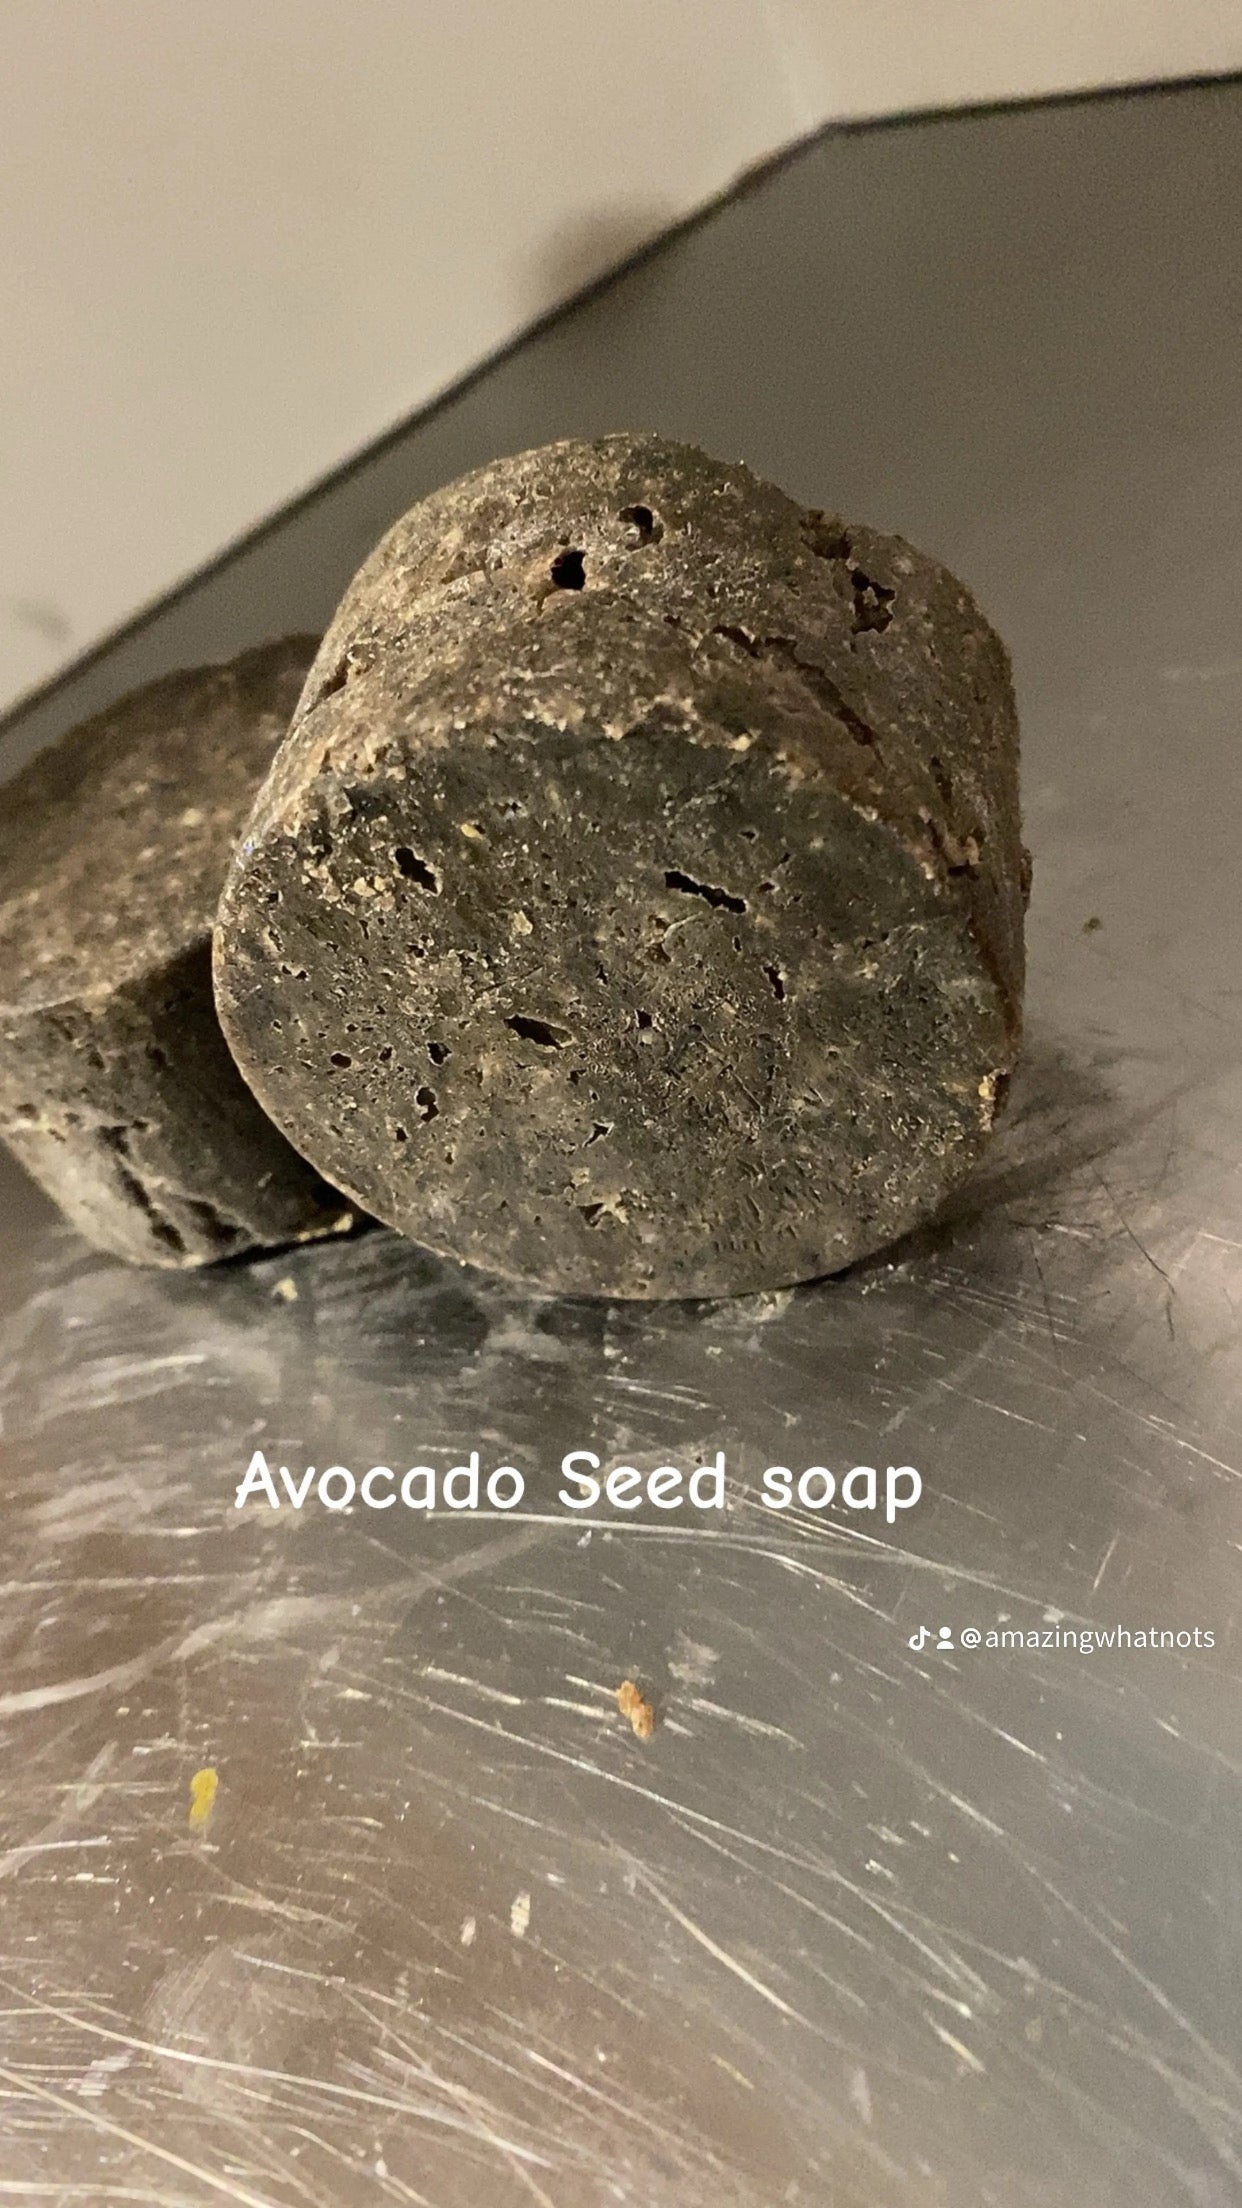 Avocado seed soap